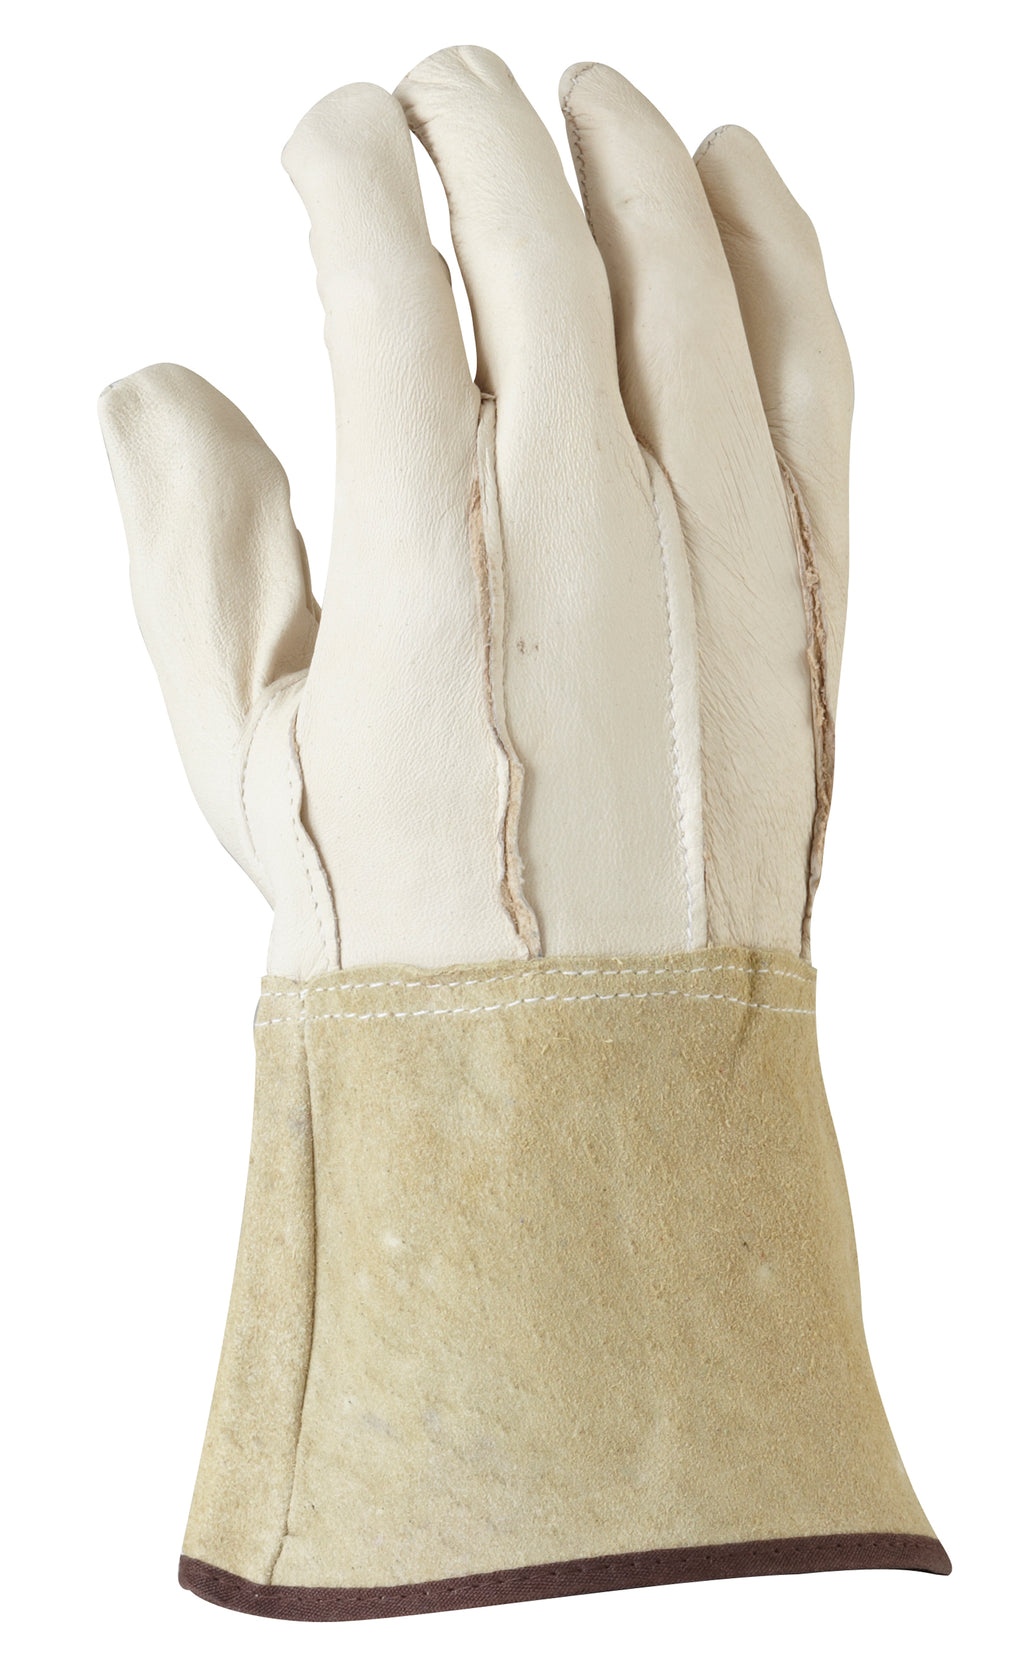 Maxisafe TIG Welding Glove